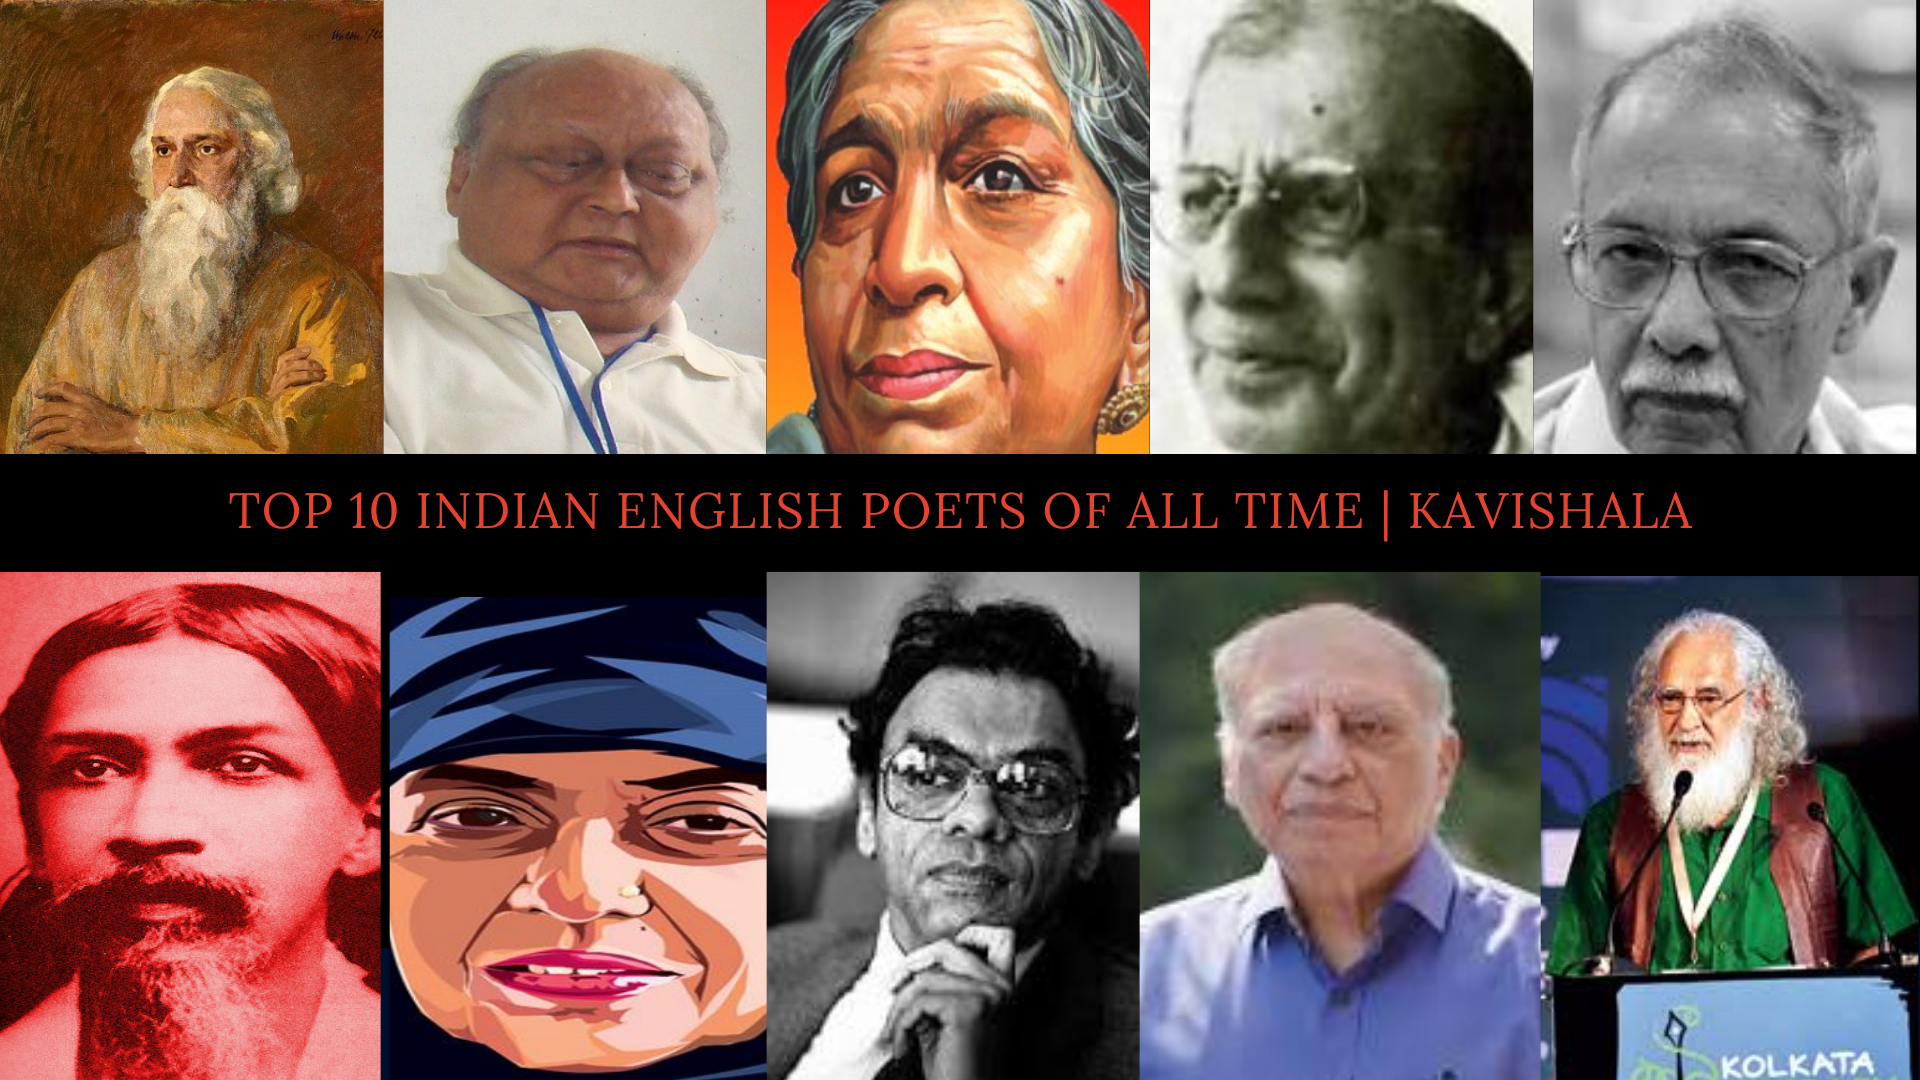 Top10 Indian English Poets of All Time | Kavishala's image